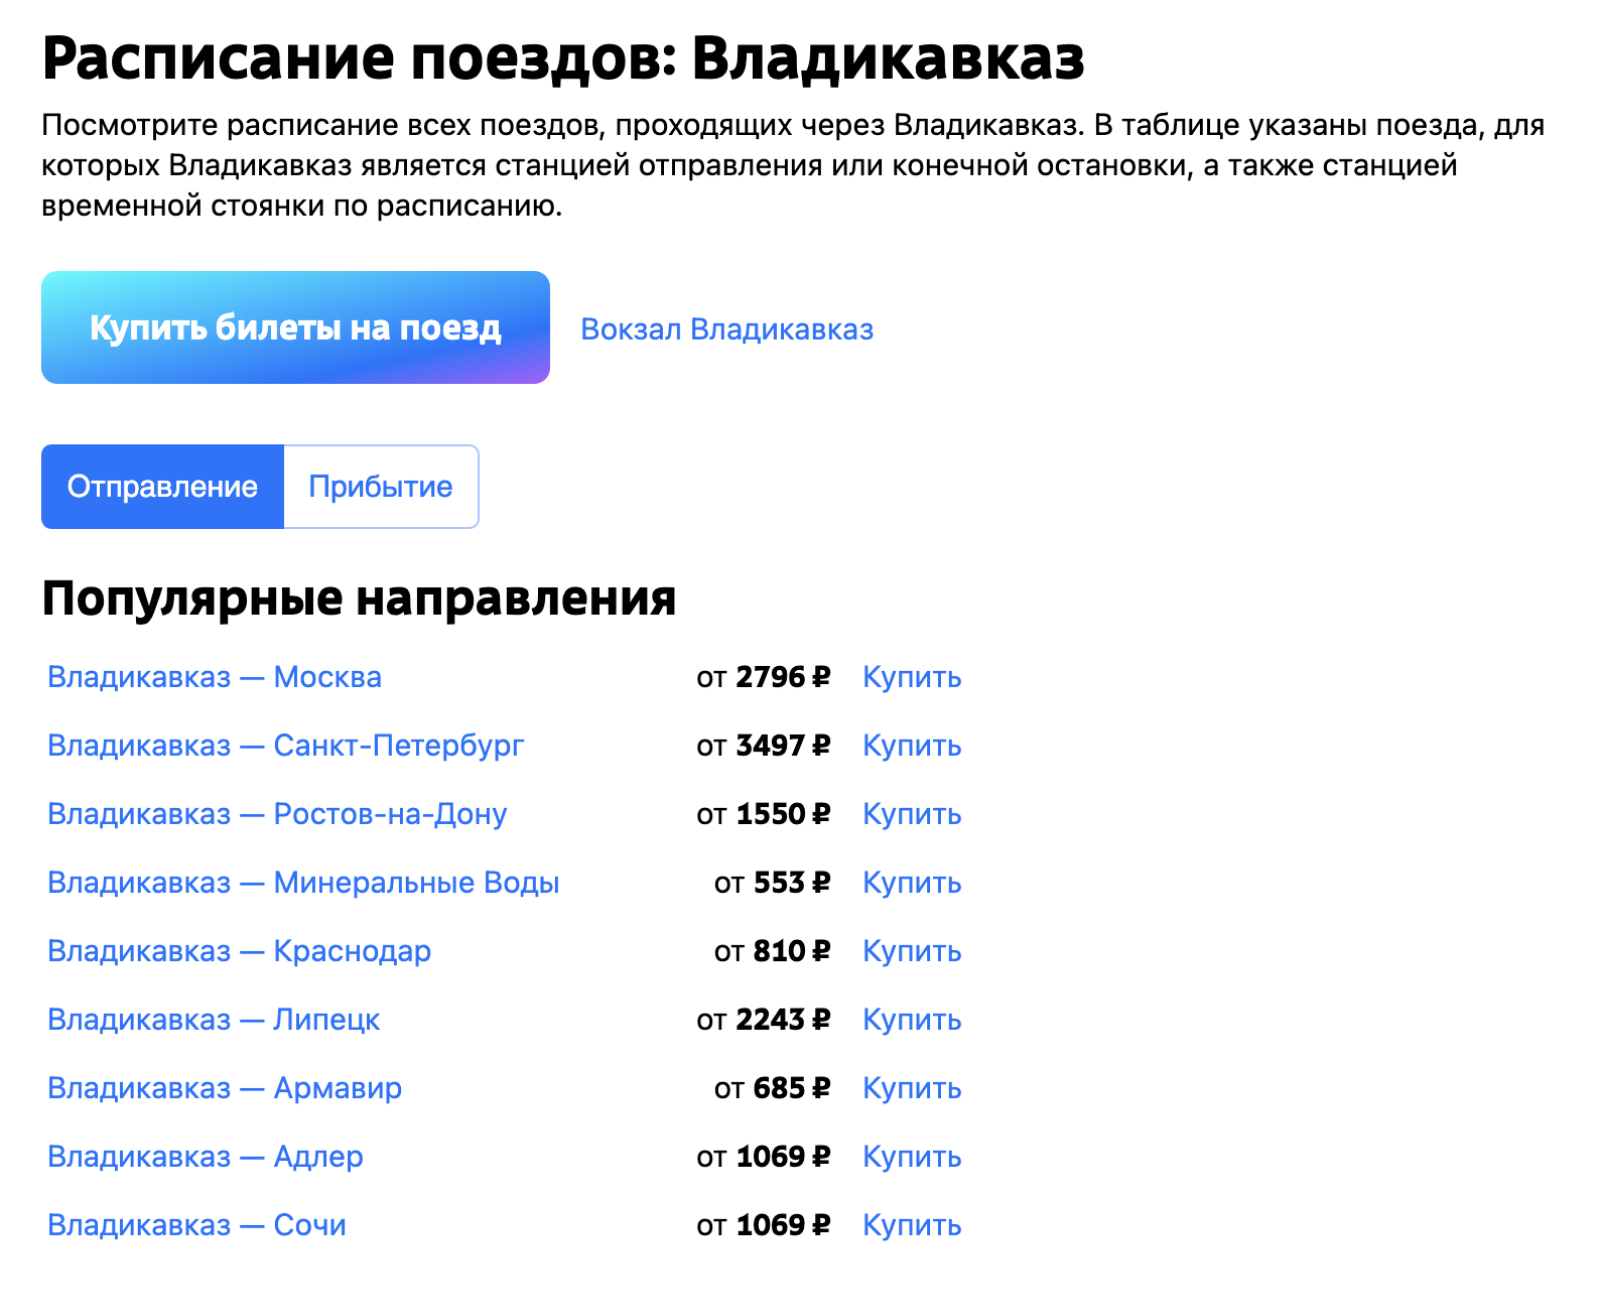 Примеры цен билетов на поезда дальнего следования из Владикавказа. Источник: tutu.ru